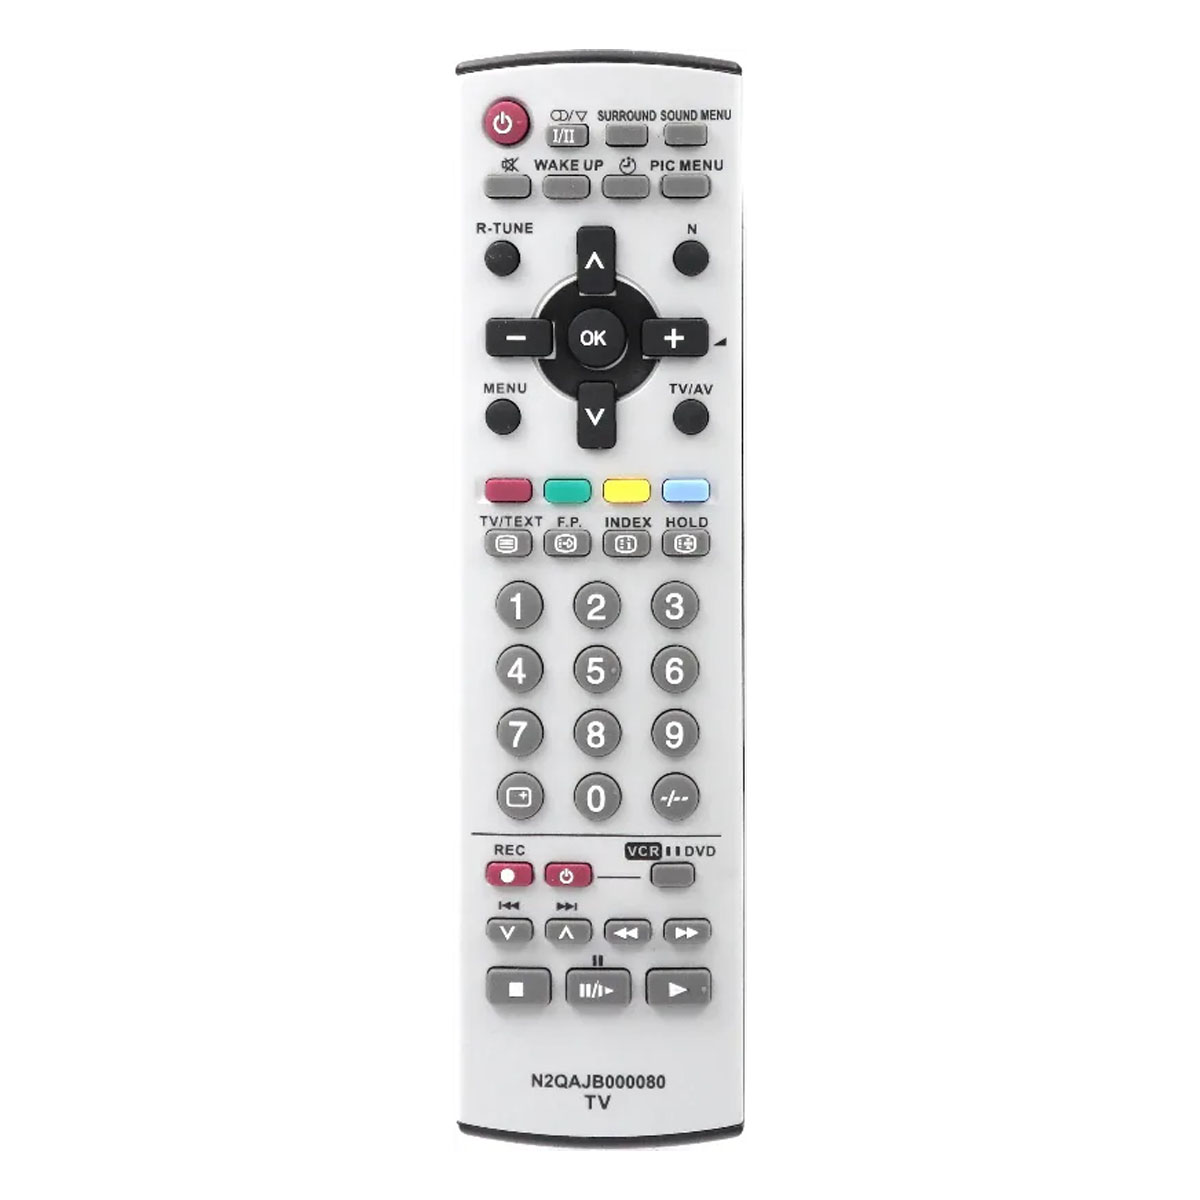 Пульт ДУ N2QAJB000080 для телевизоров PANASONIC, цвет серый